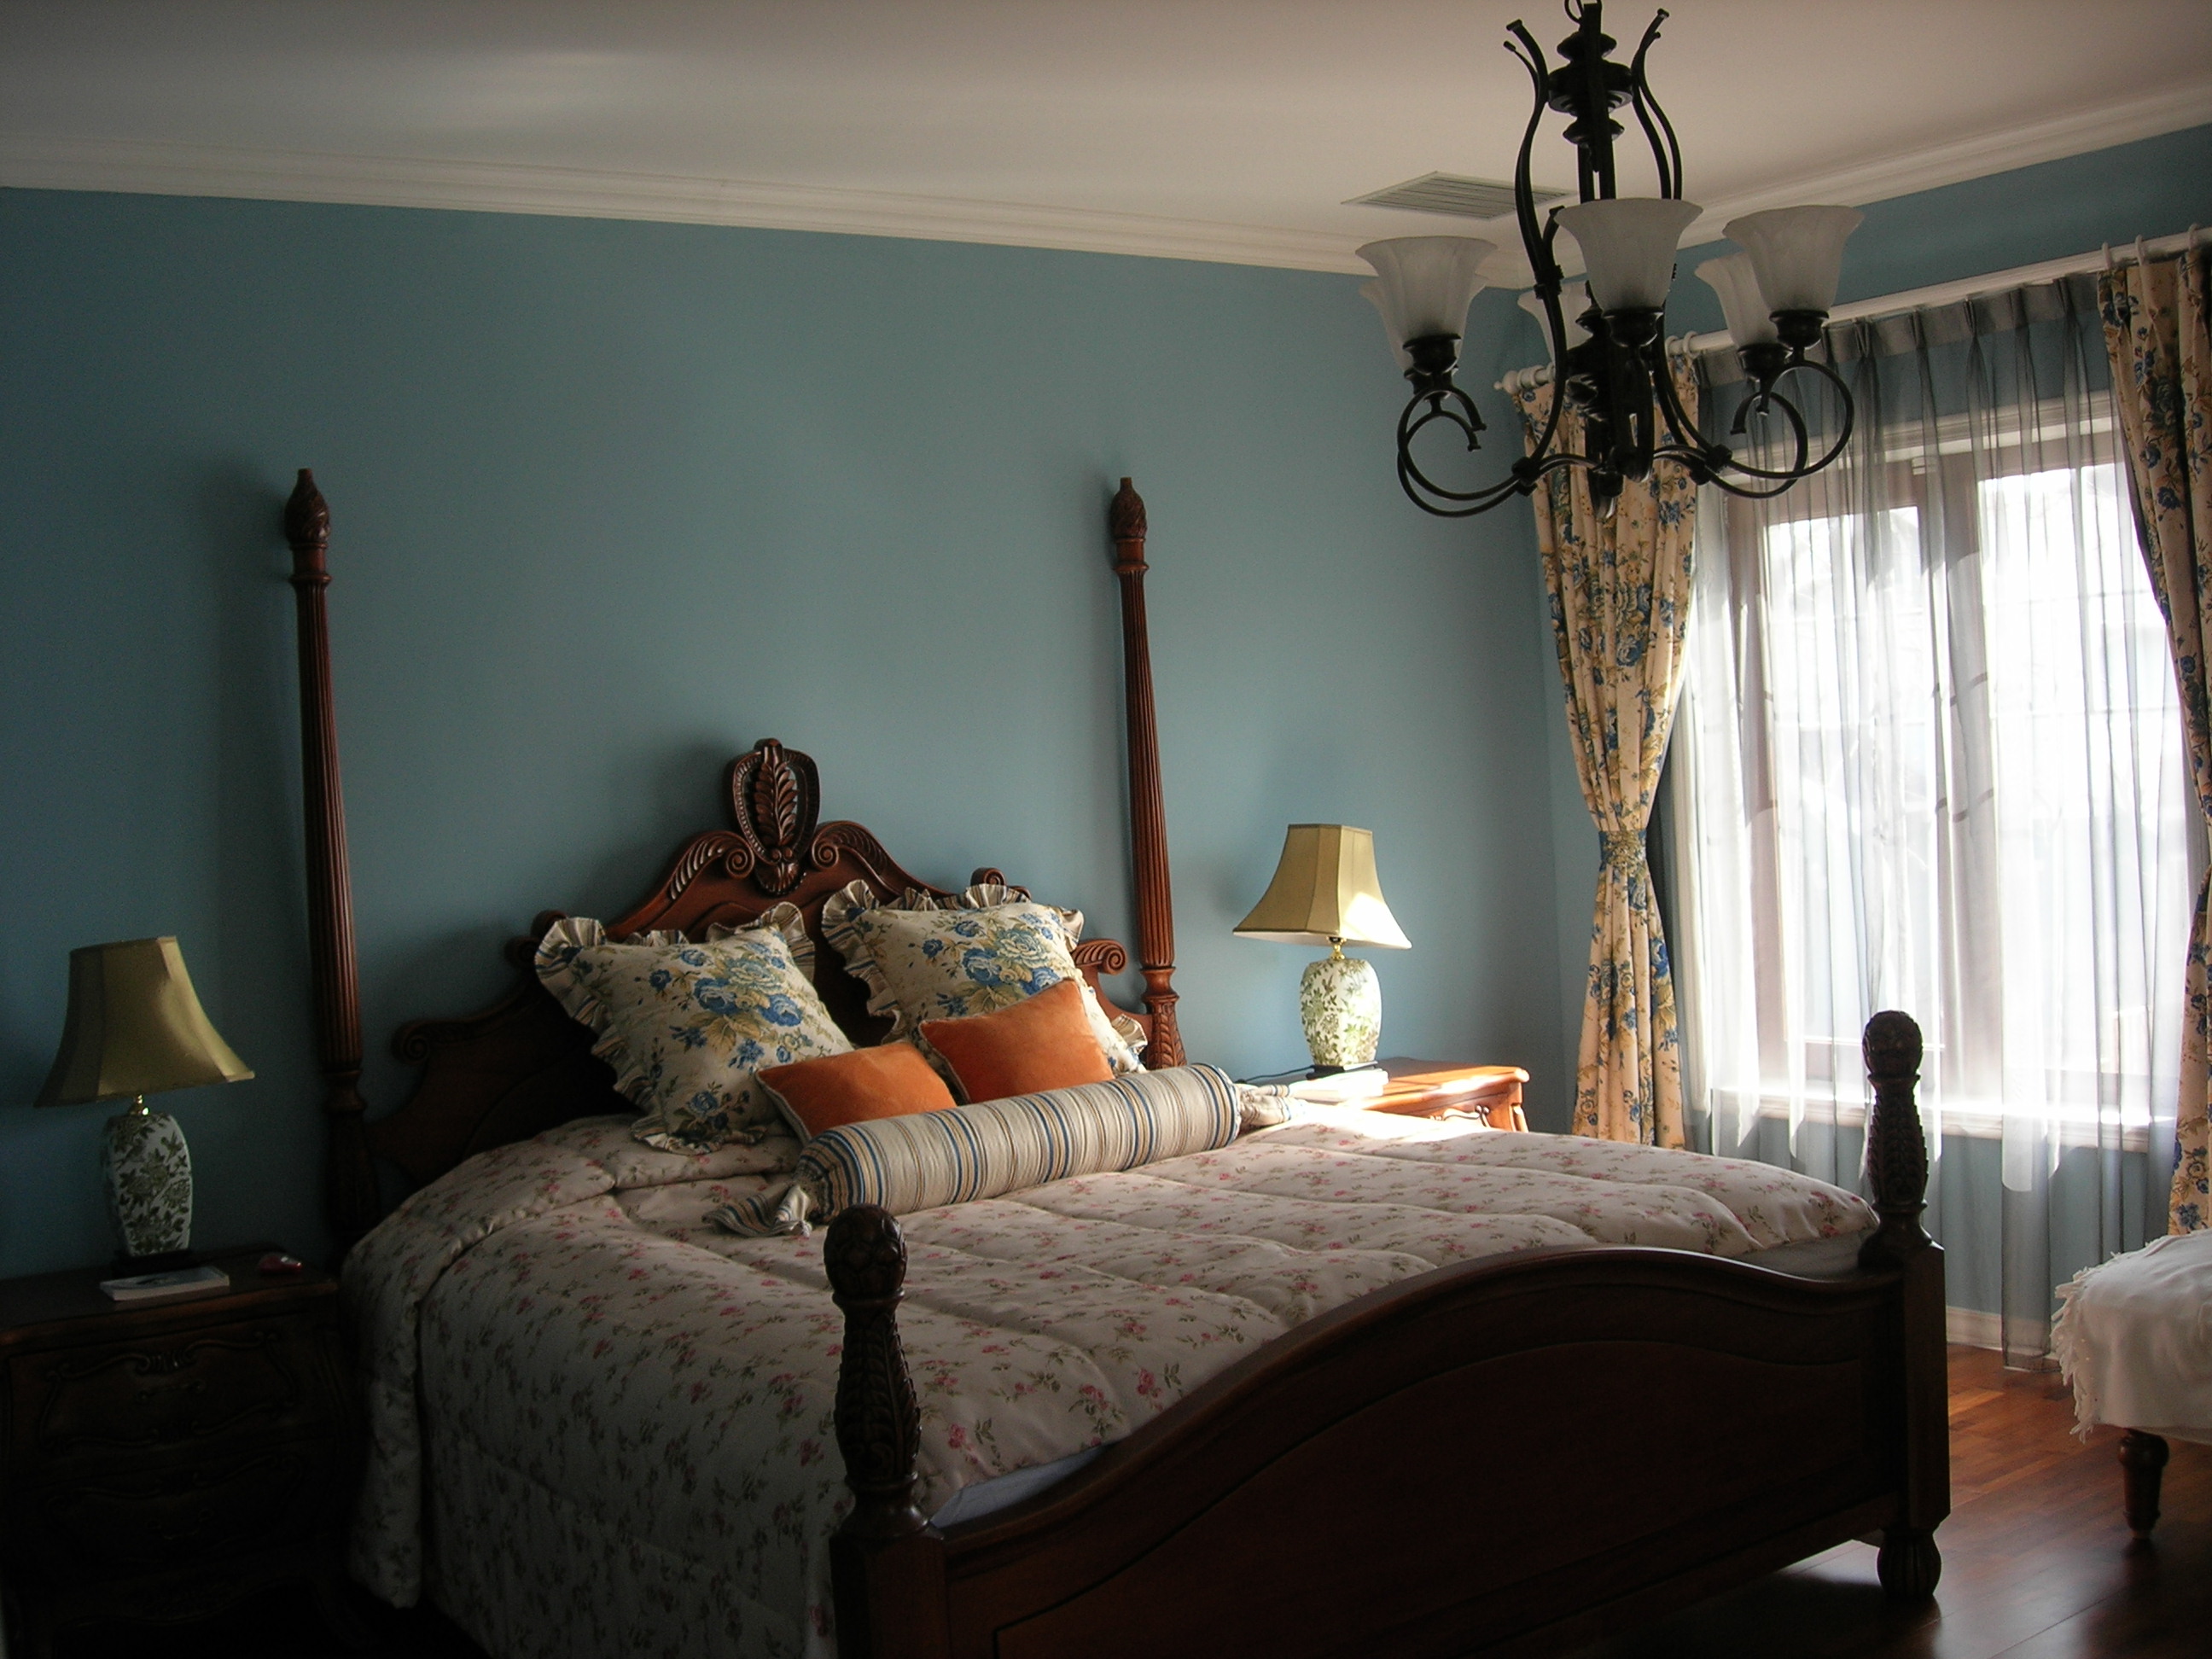 美式混搭 暖色调 休闲舒适 卧室图片来自框框在惊艳之作200平复式美式混搭实景的分享